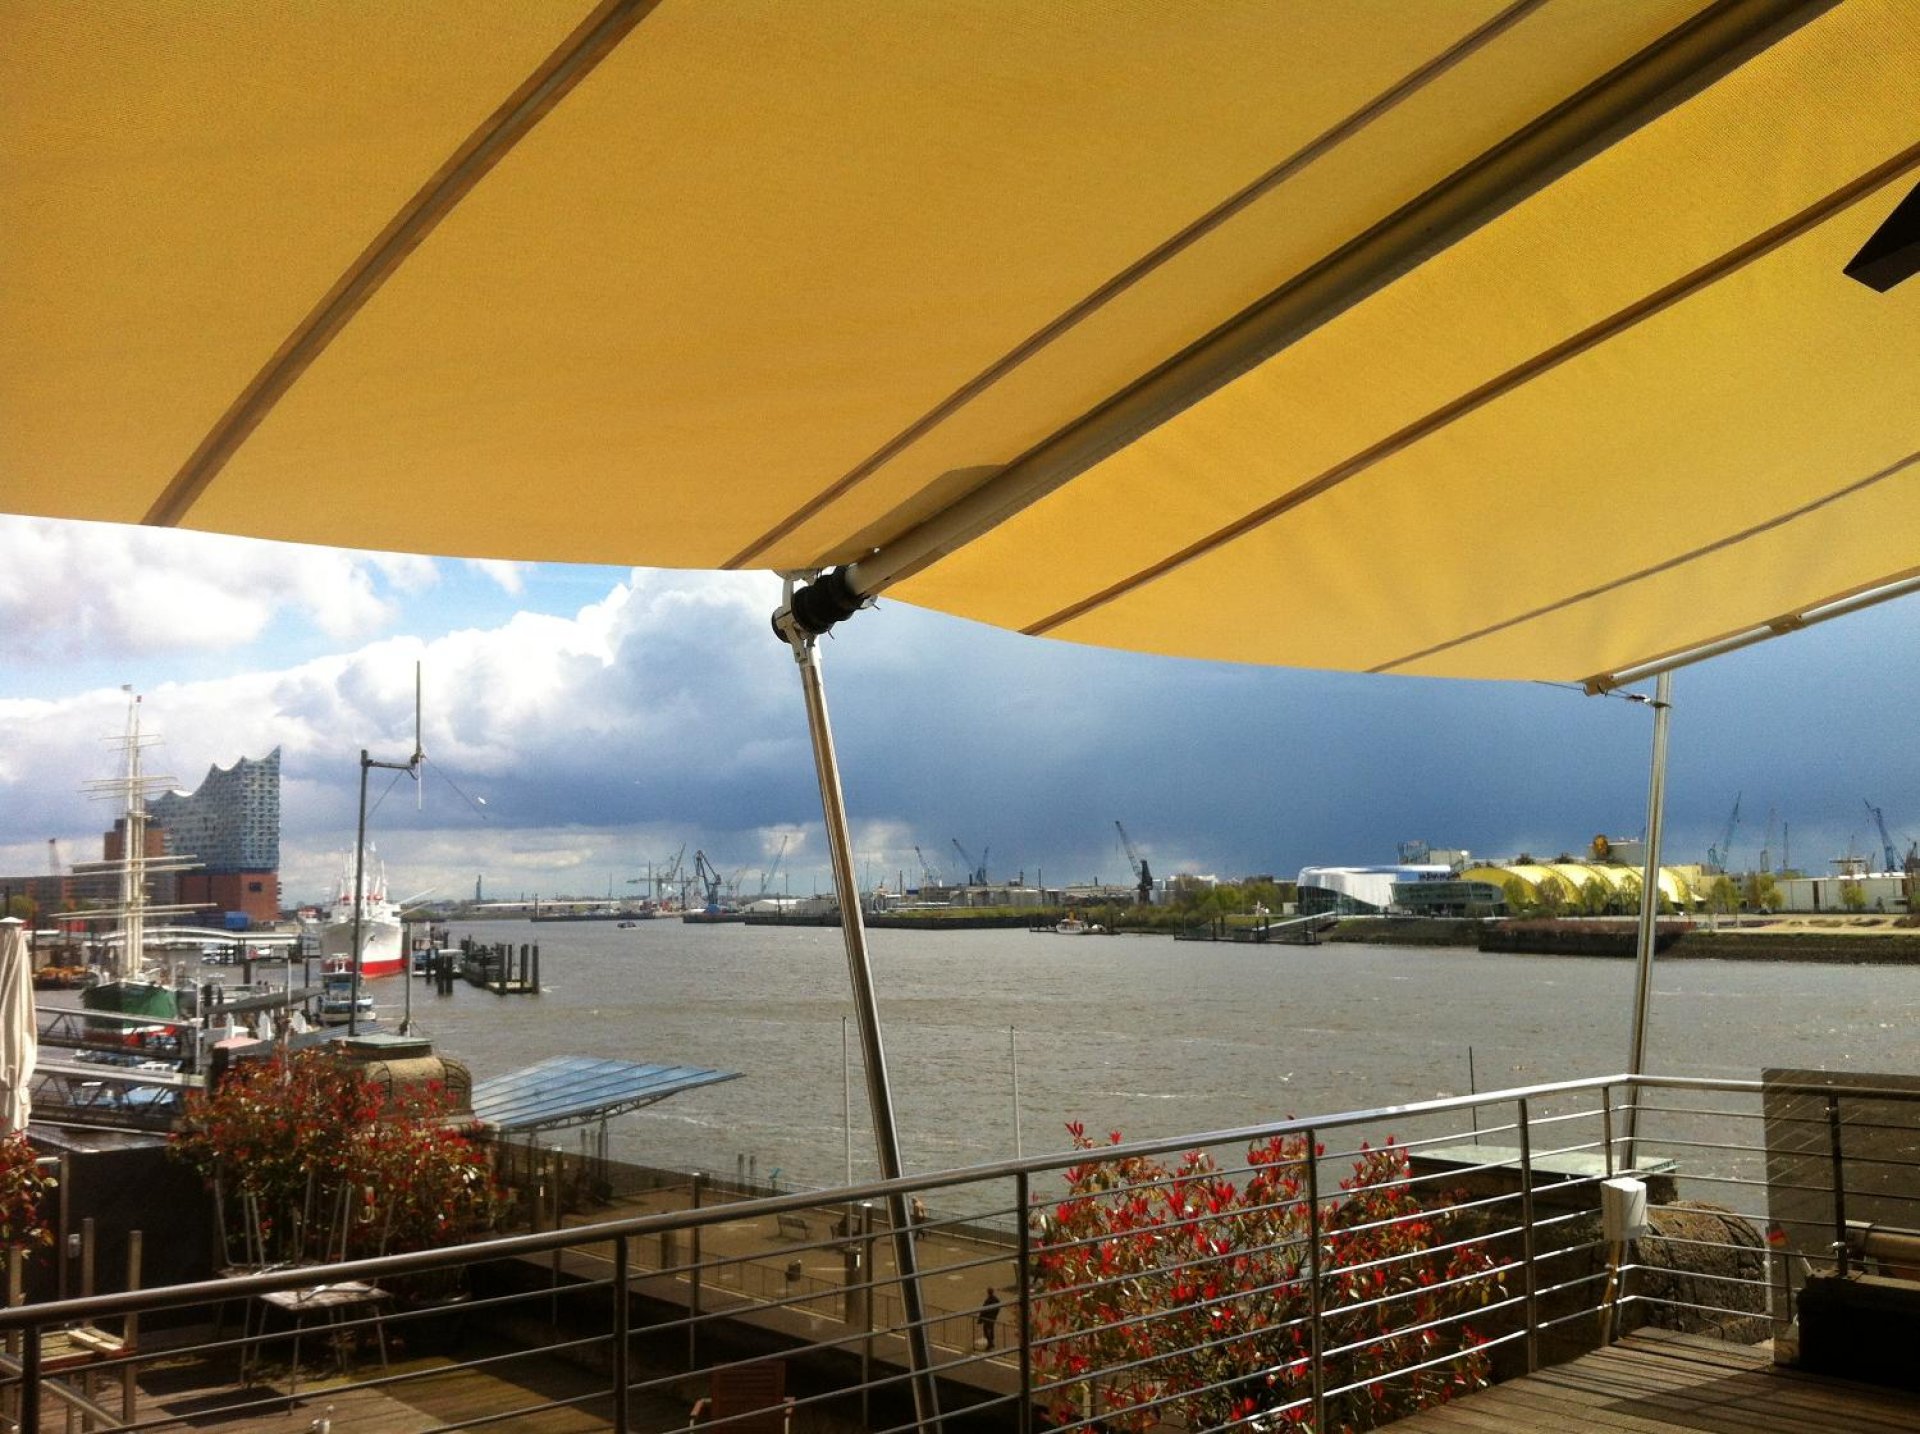 Der Hafen-Klub in Hamburg wird von einem original SunSquare Sonnensegel beschatt